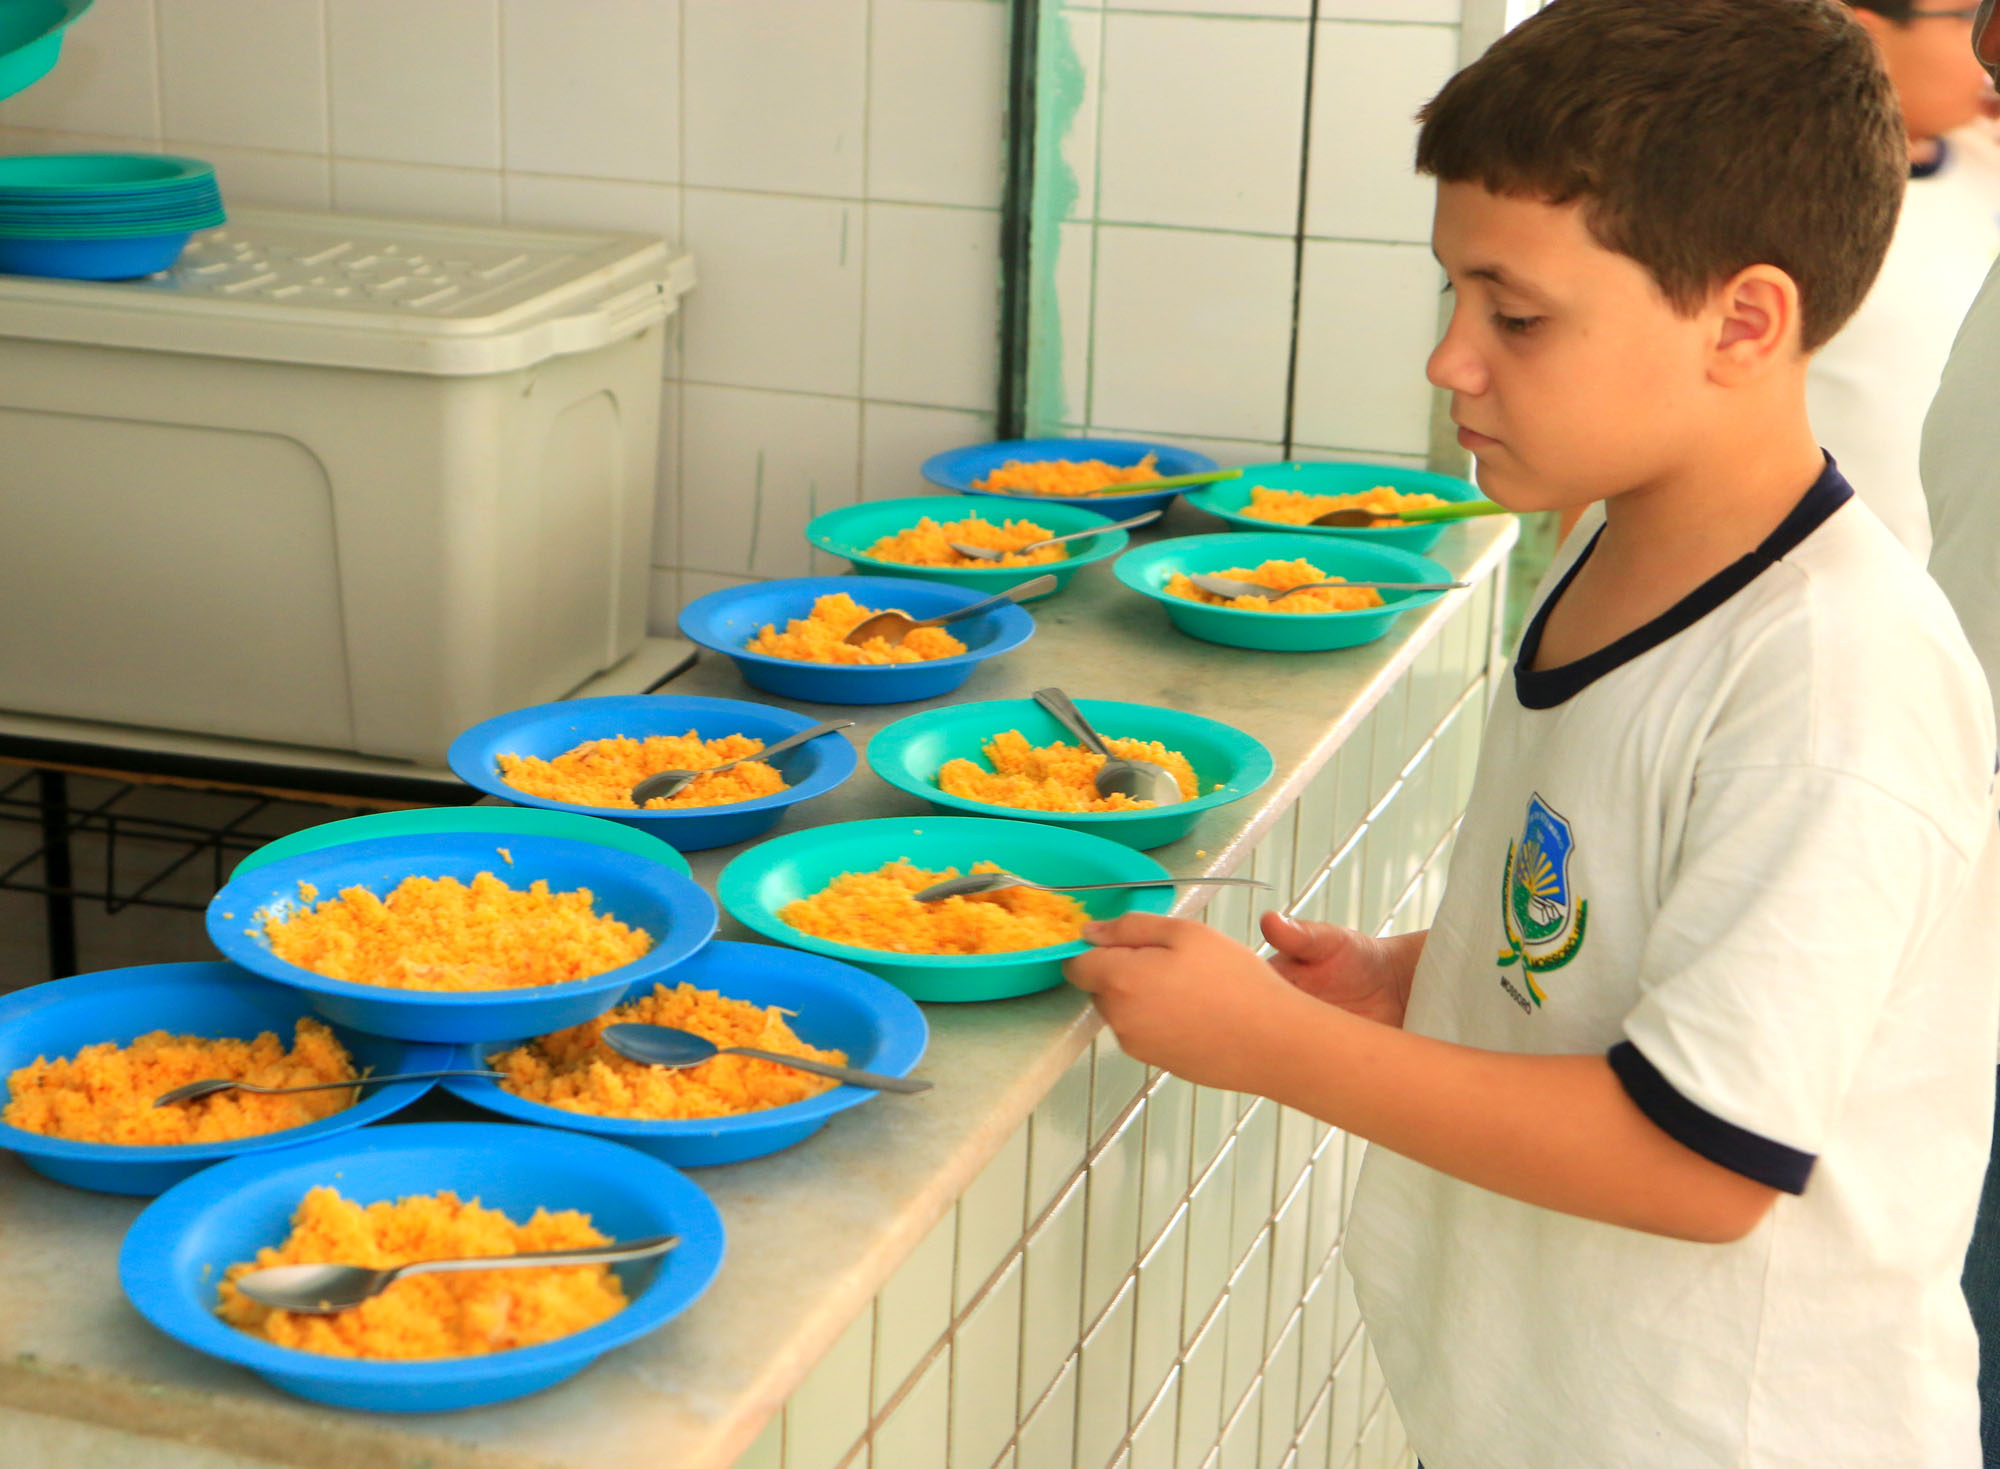 Saúde realiza capacitação em educação alimentar, nutricional e práticas corporais para combater obesidade infantil